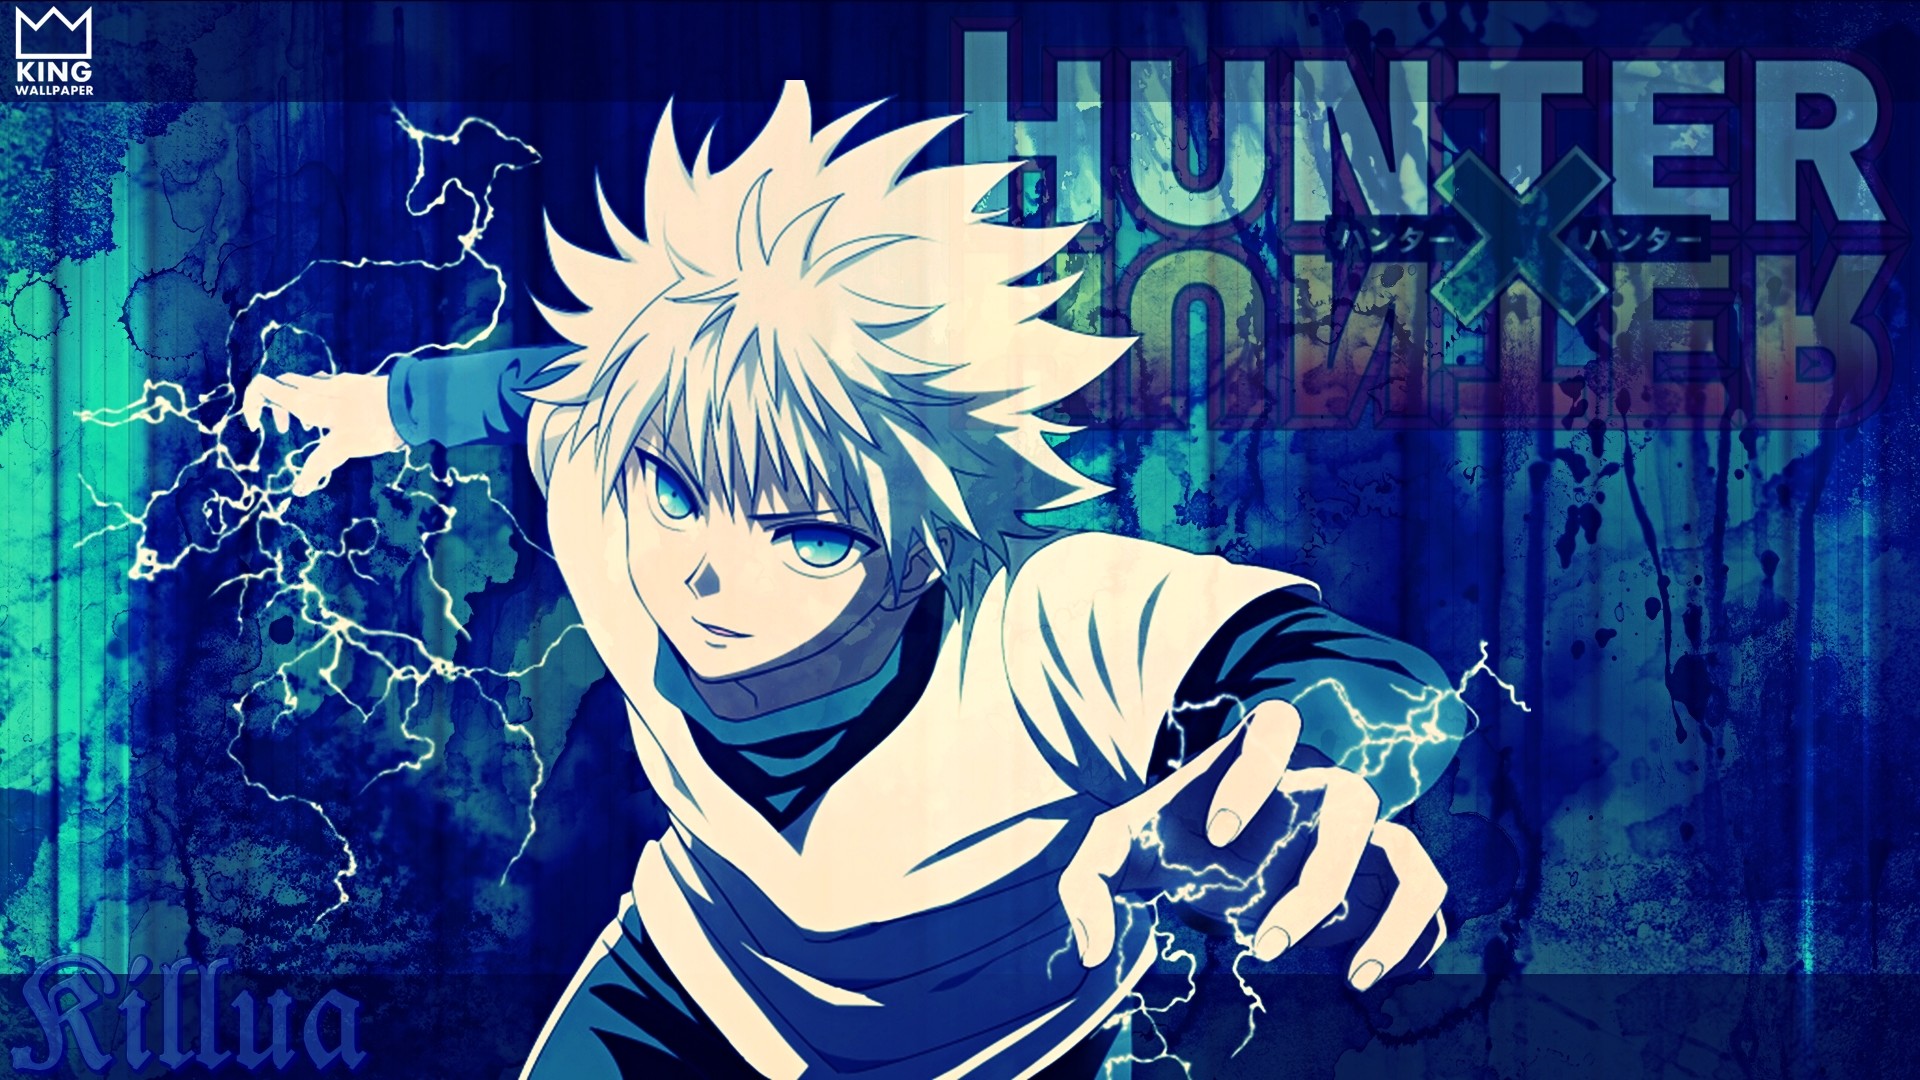 Gon Freecss Wallpaper 4K, Black background, Hunter x Hunter